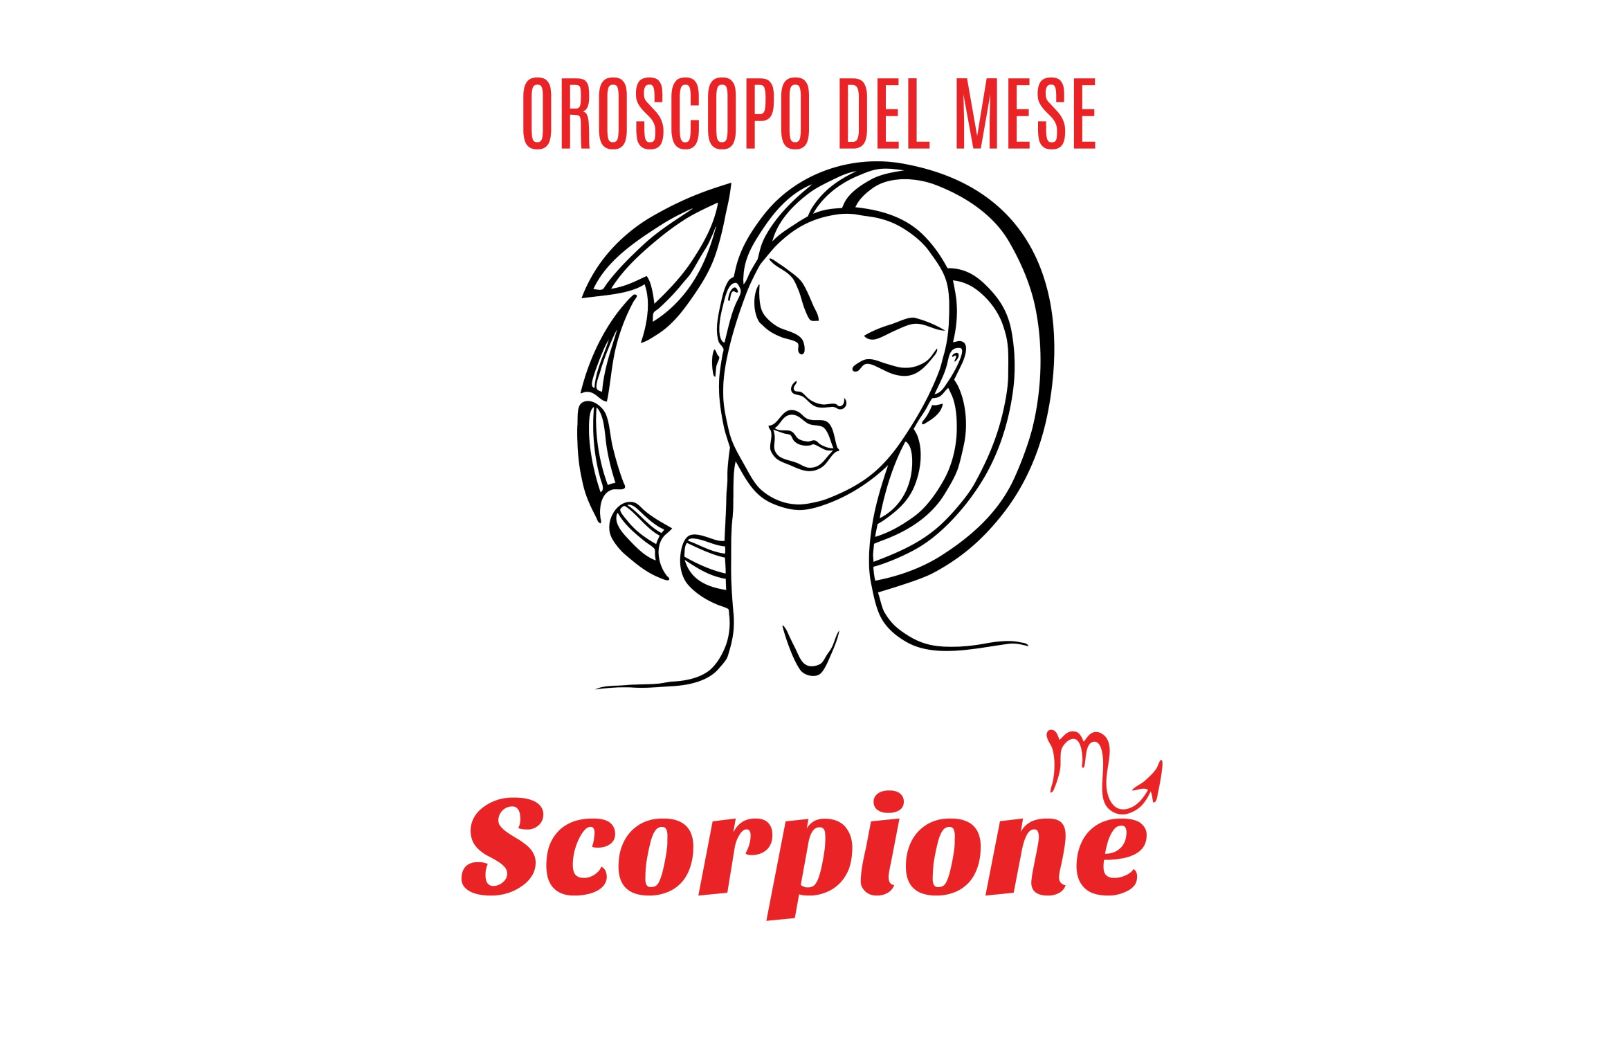 Oroscopo del mese: Scorpione - luglio 2018